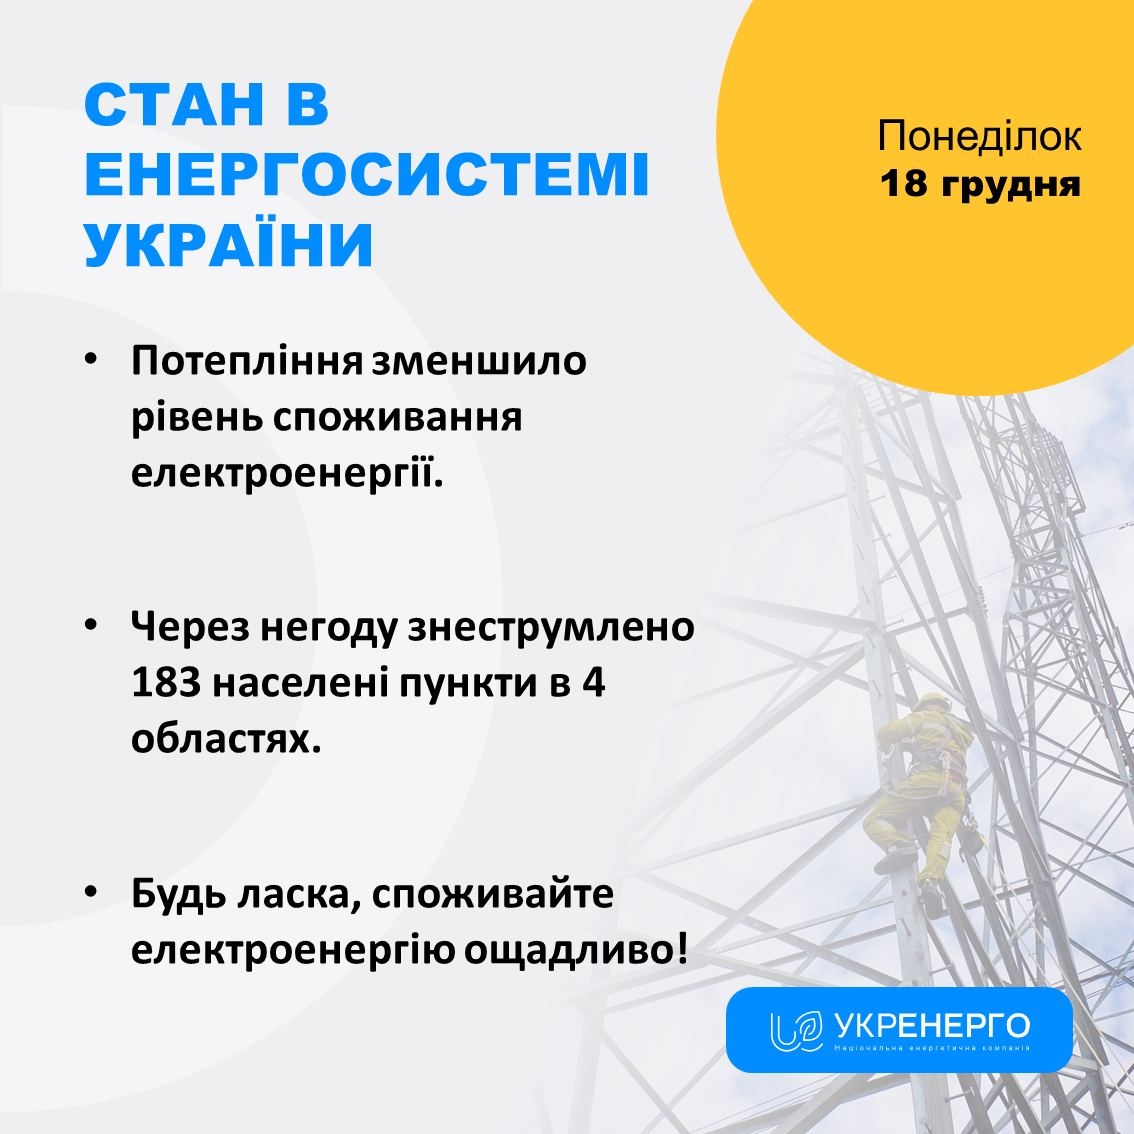 В Україні через потепління знизився рівень споживання електроенергії